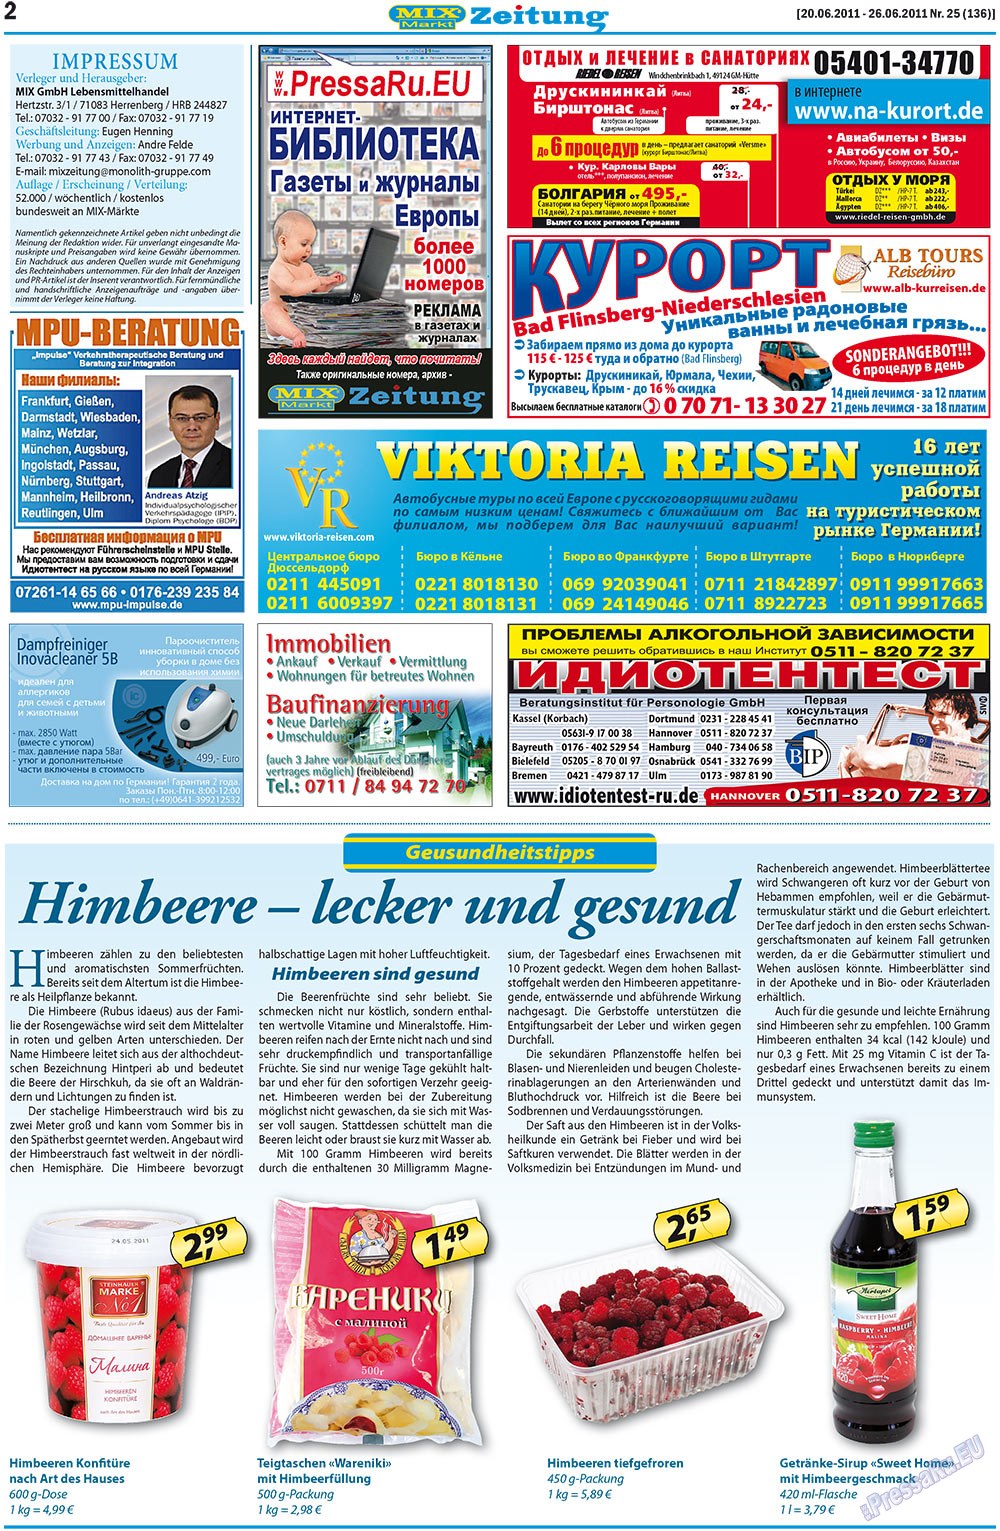 MIX-Markt Zeitung (газета). 2011 год, номер 25, стр. 2